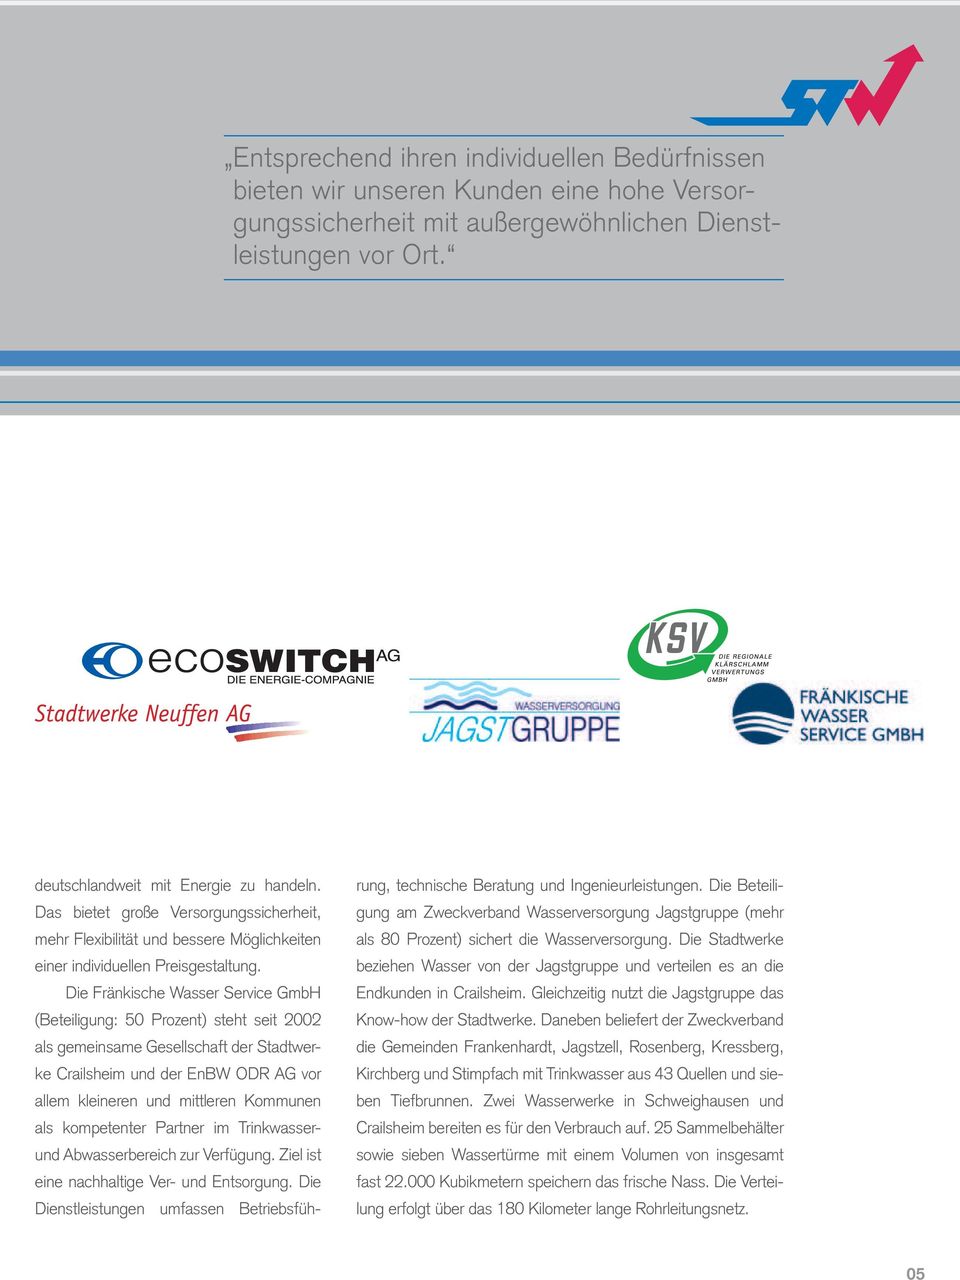 Die Fränkische Wasser Service GmbH (Beteiligung: 50 Prozent) steht seit 2002 als gemeinsame Gesellschaft der Stadtwerke Crailsheim und der EnBW ODR AG vor allem kleineren und mittleren Kommunen als